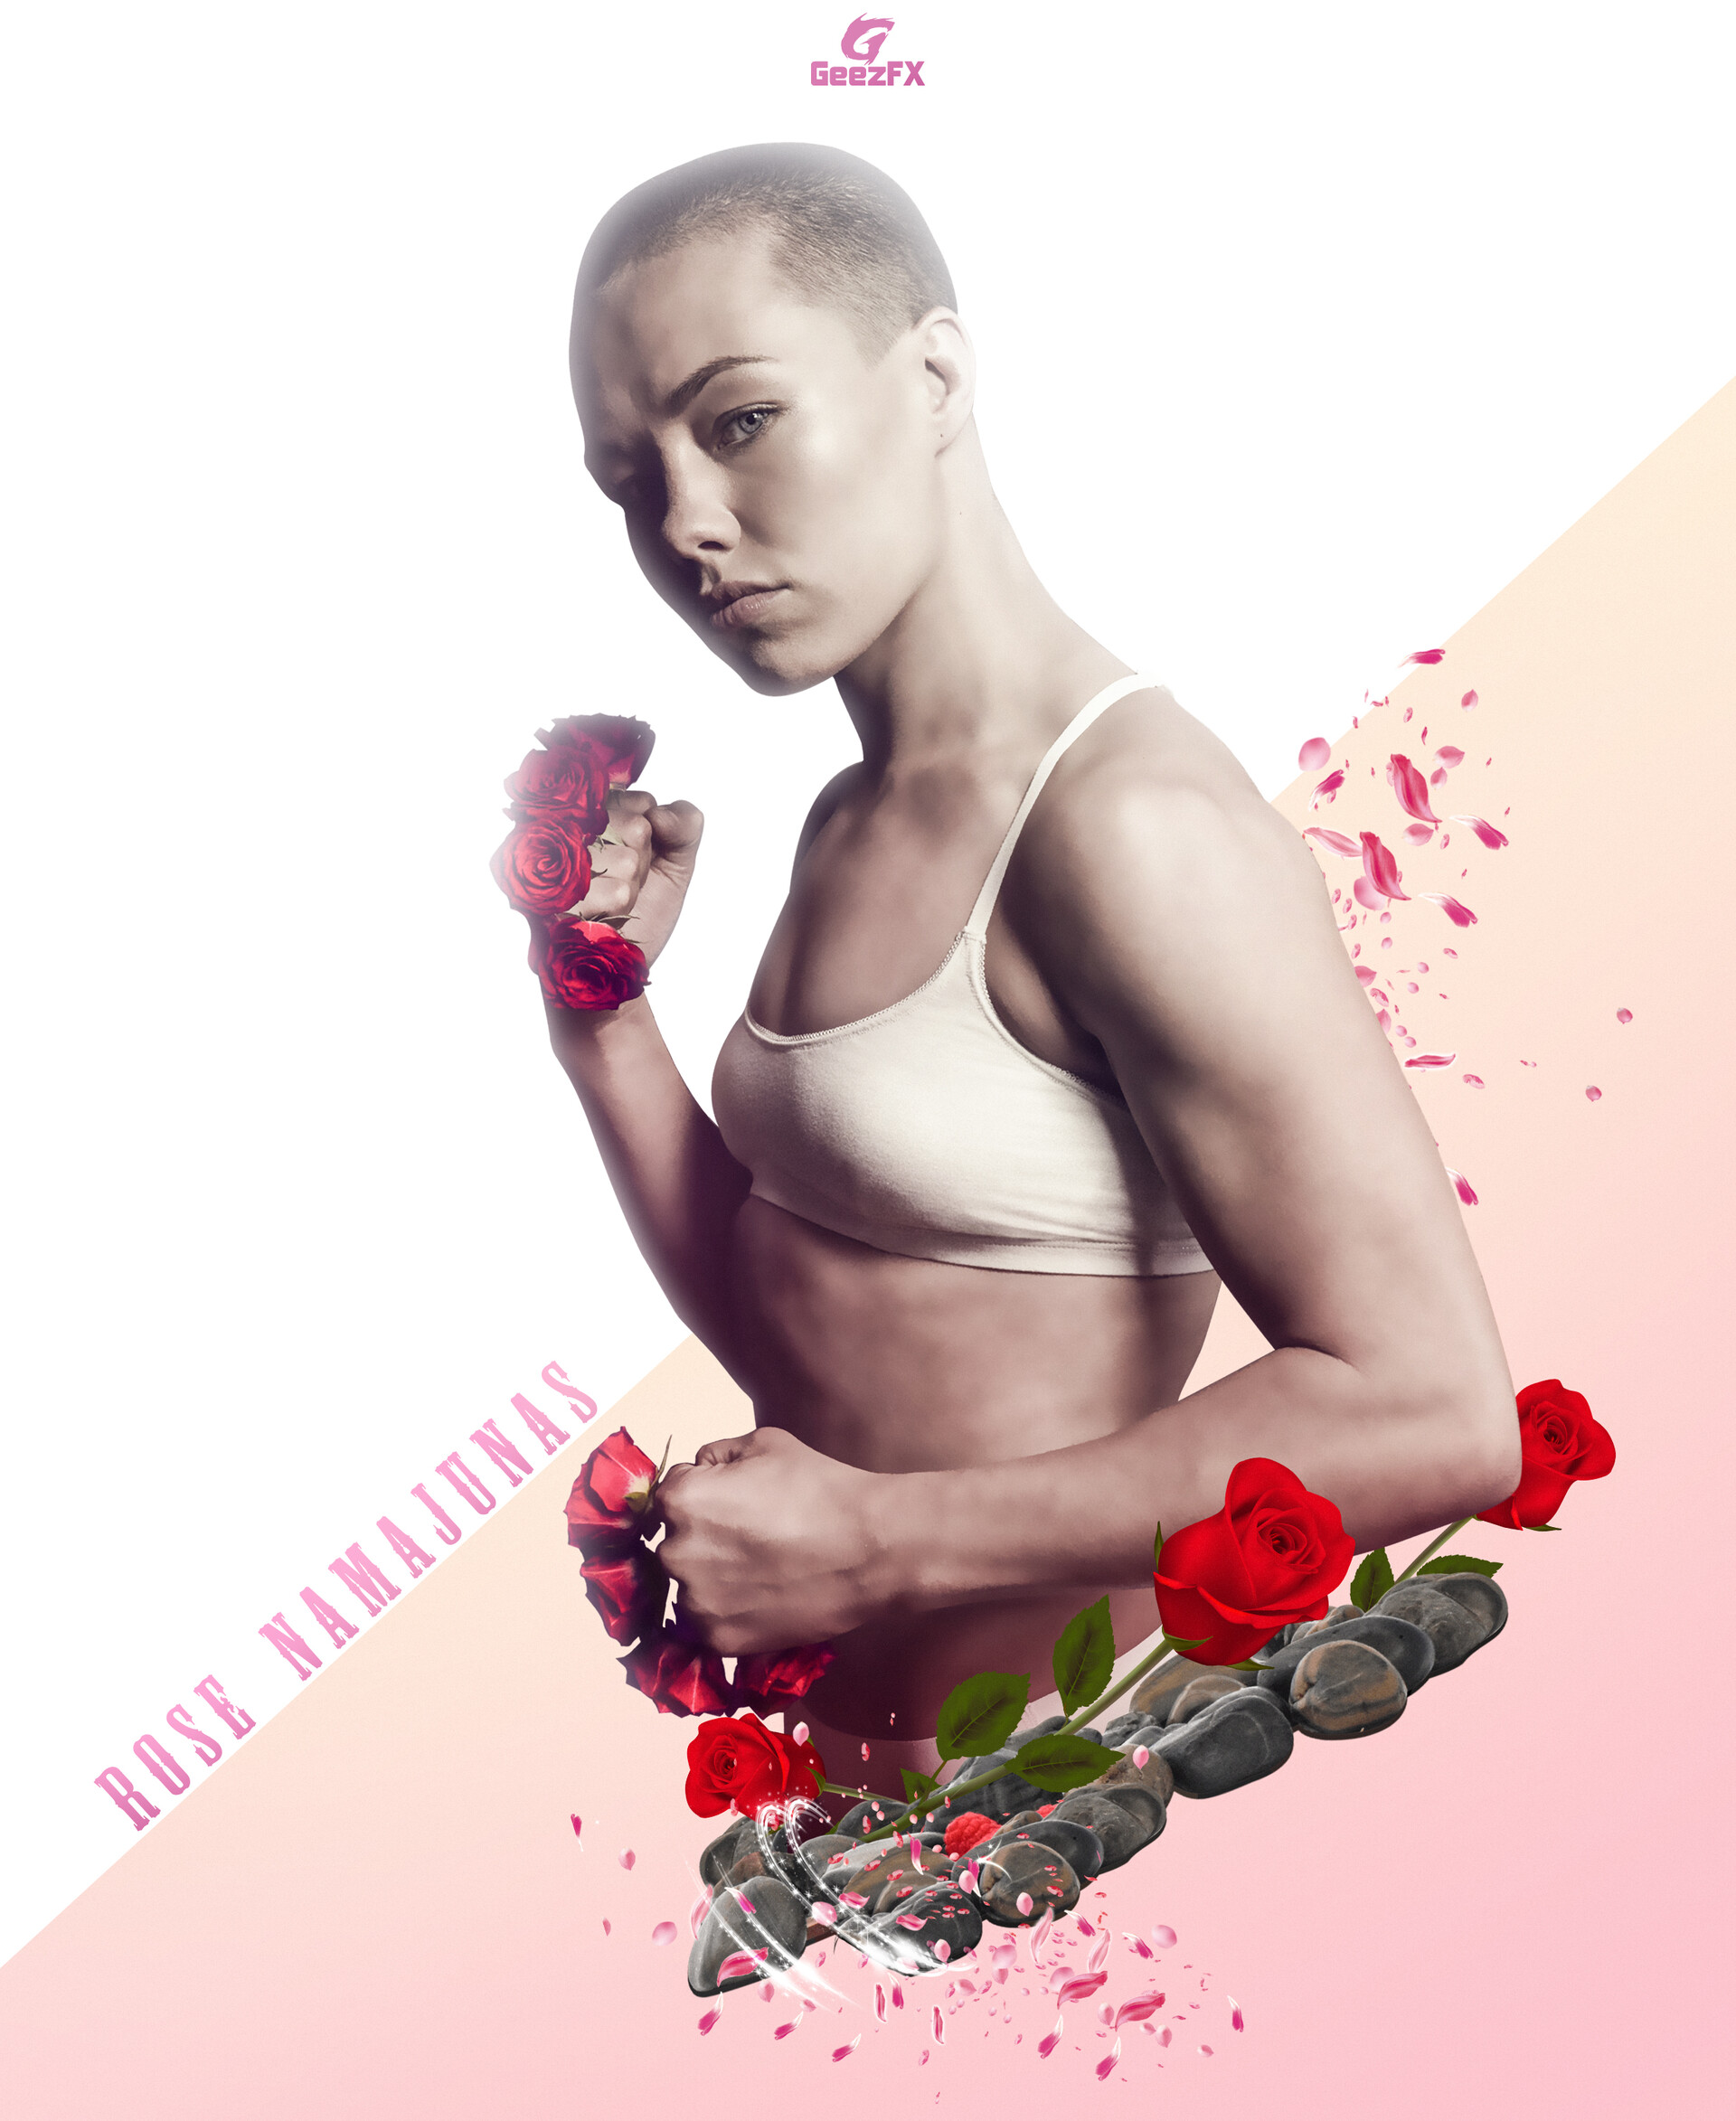 Fan Art of an UFC Fighter (Rose Namajunas) Facebook: GeezFX Twitter: GeezFX...